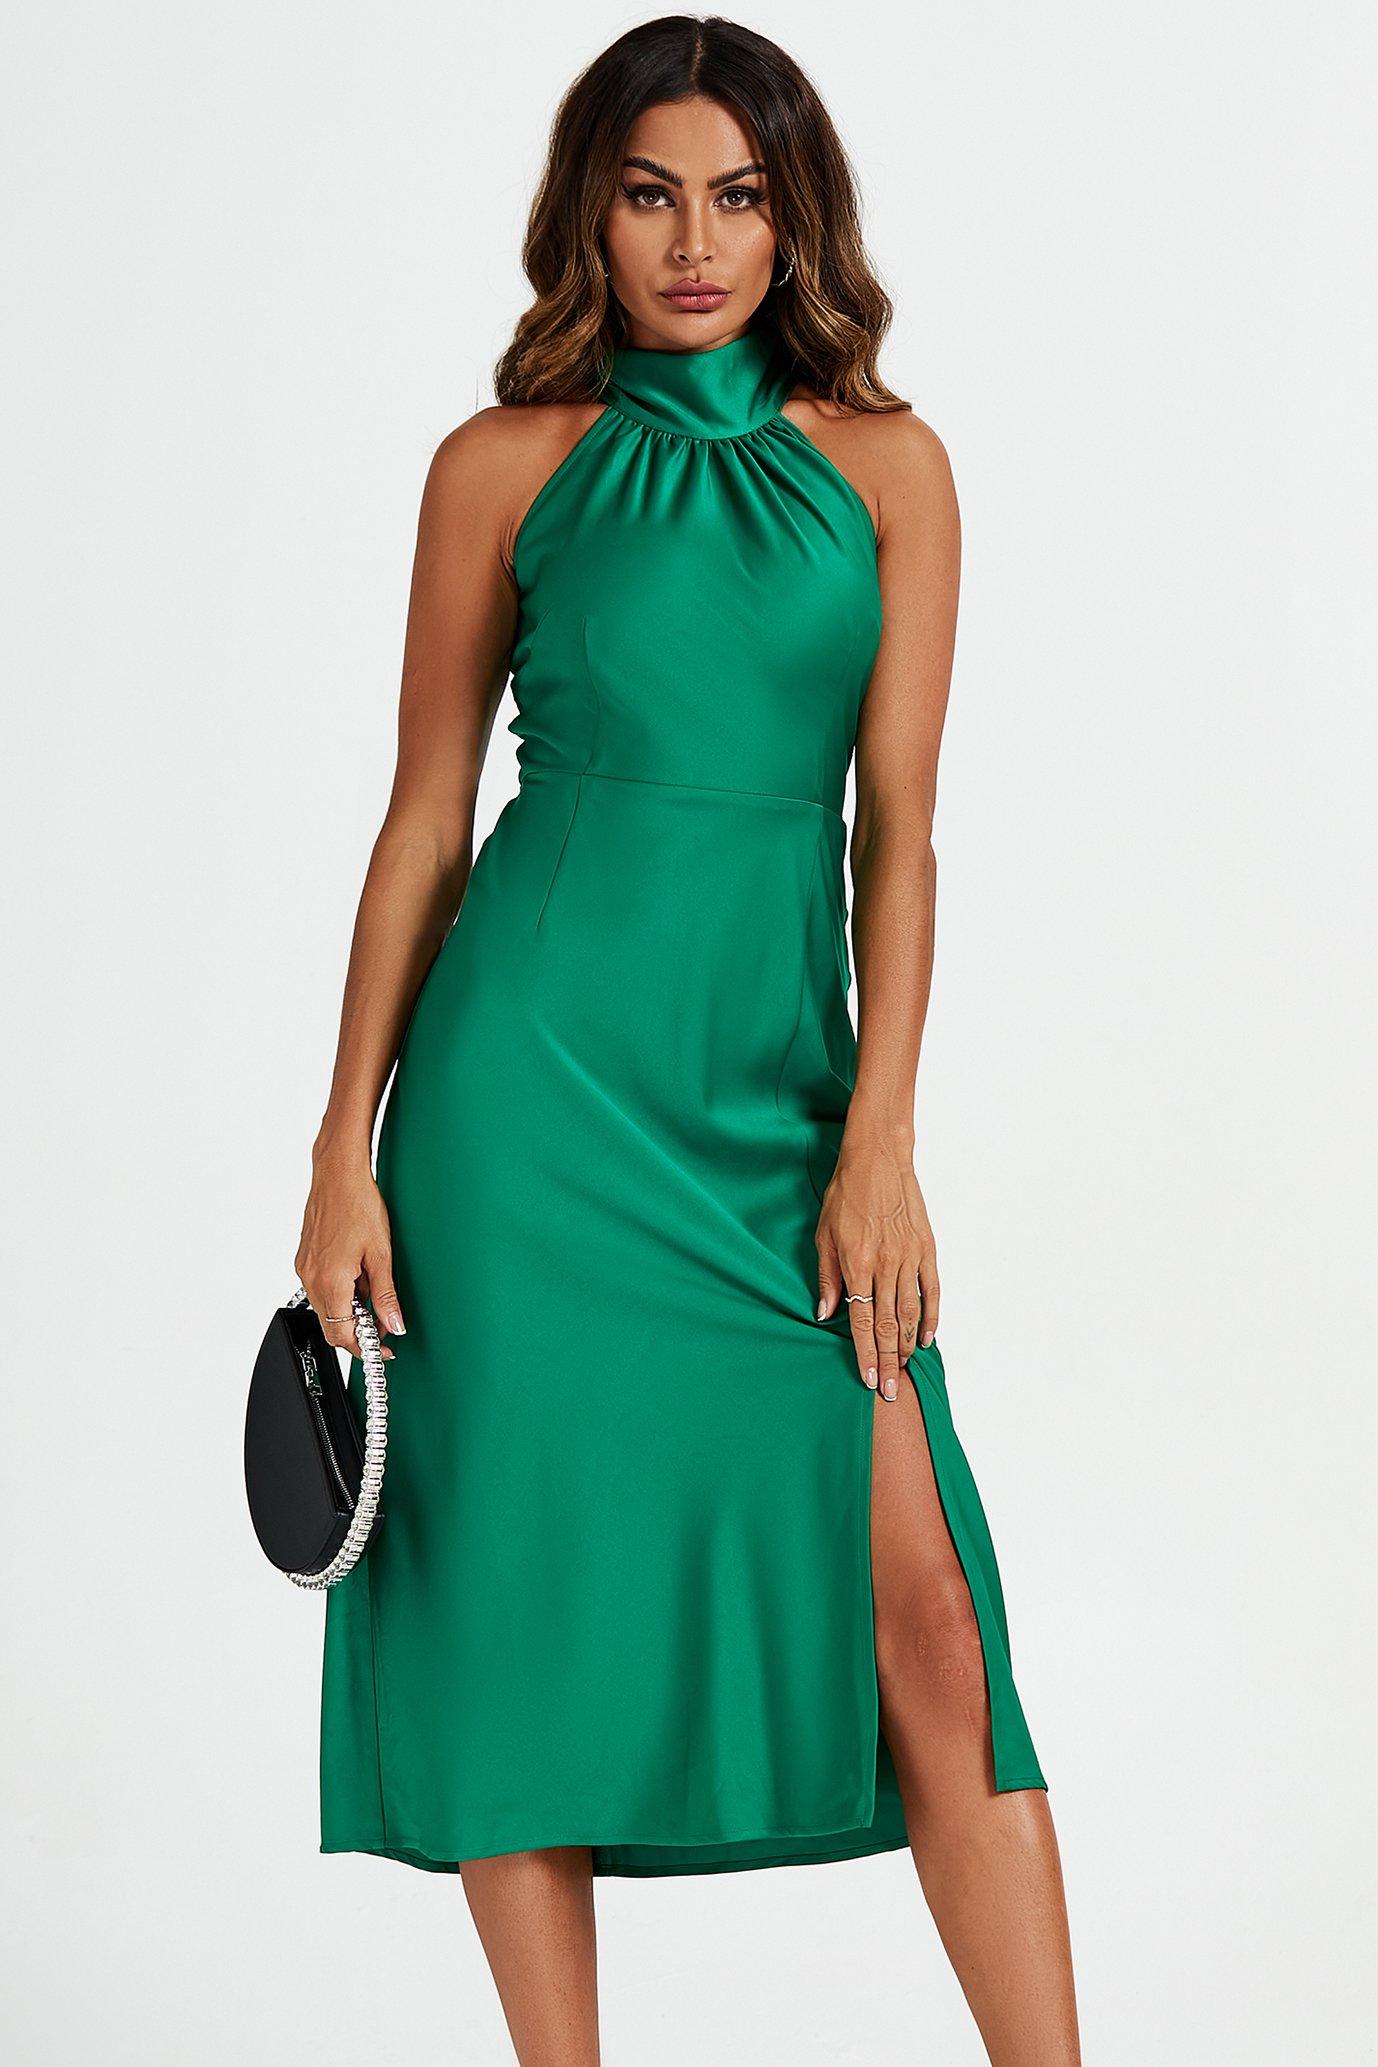 Зеленое атласное платье миди с воротником-бретелькой и завязкой на спине FS Collection, зеленый